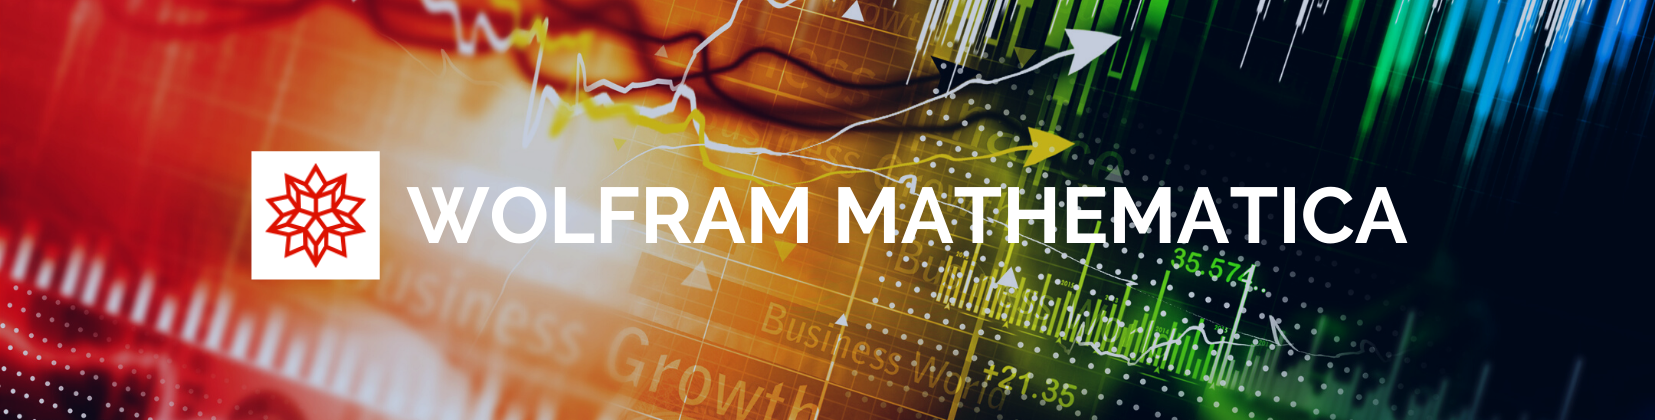 Mathematica Software Banner